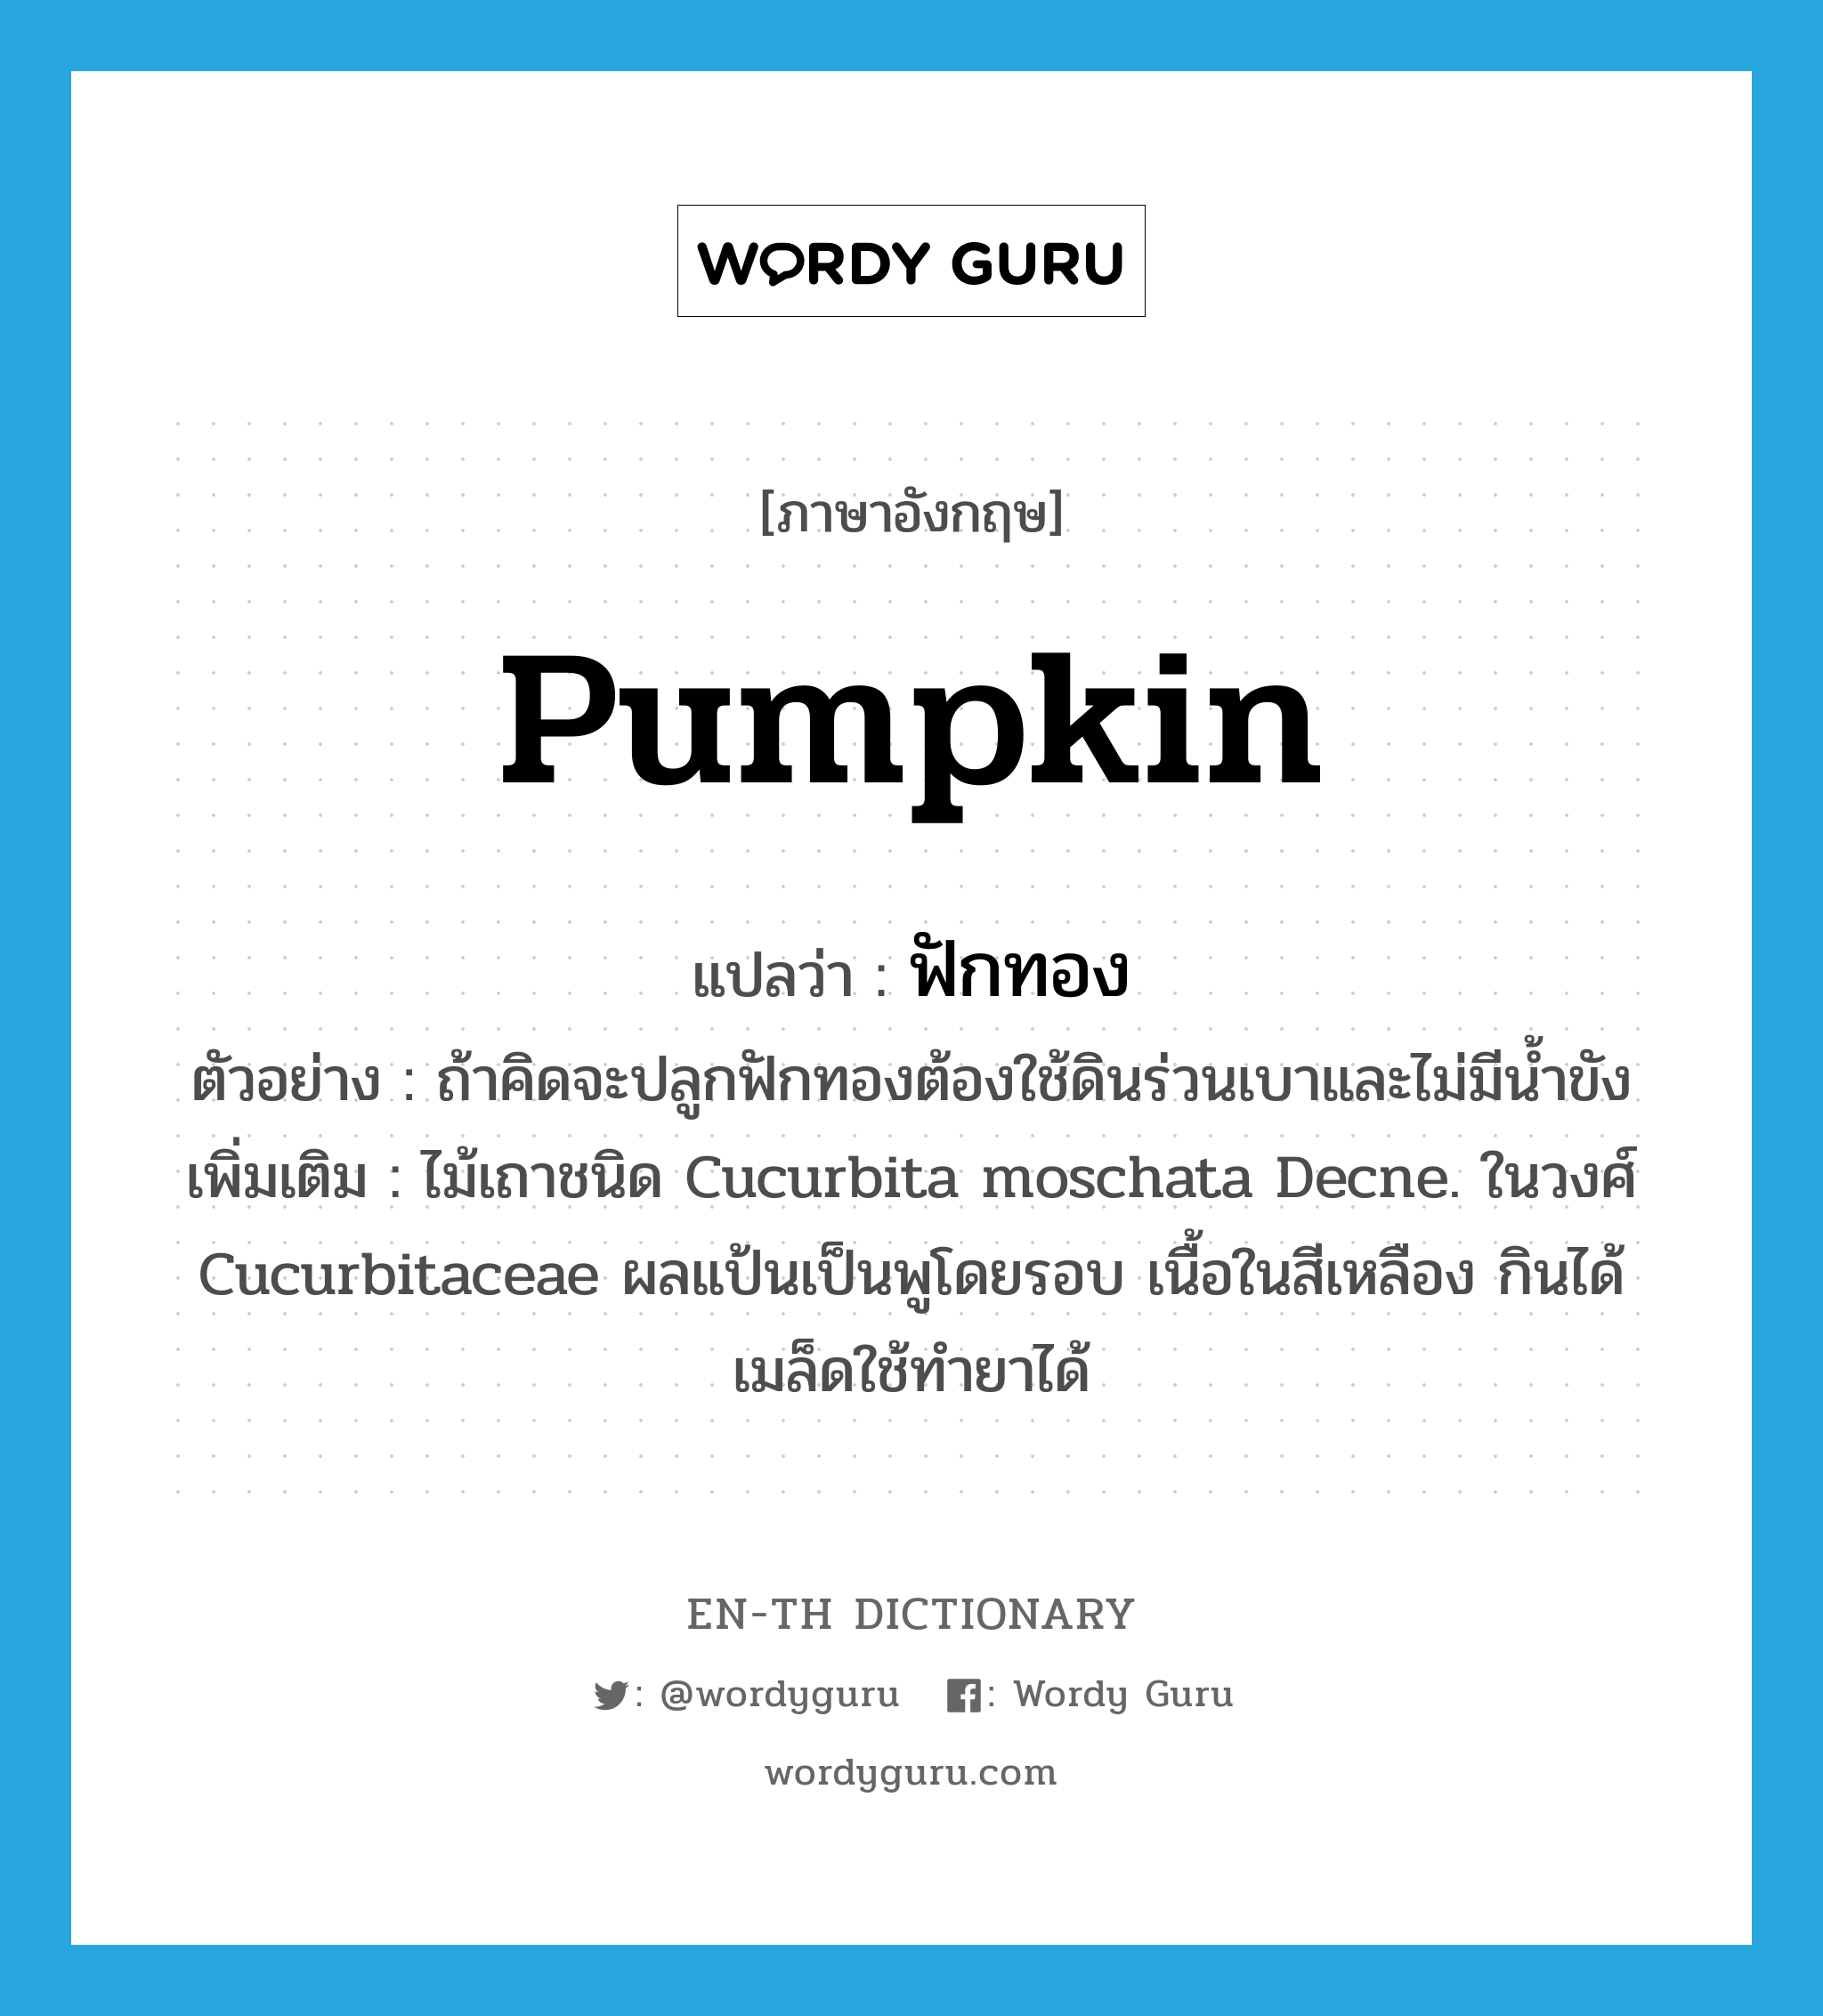 pumpkin แปลว่า?, คำศัพท์ภาษาอังกฤษ pumpkin แปลว่า ฟักทอง ประเภท N ตัวอย่าง ถ้าคิดจะปลูกฟักทองต้องใช้ดินร่วนเบาและไม่มีน้ำขัง เพิ่มเติม ไม้เถาชนิด Cucurbita moschata Decne. ในวงศ์ Cucurbitaceae ผลแป้นเป็นพูโดยรอบ เนื้อในสีเหลือง กินได้ เมล็ดใช้ทำยาได้ หมวด N